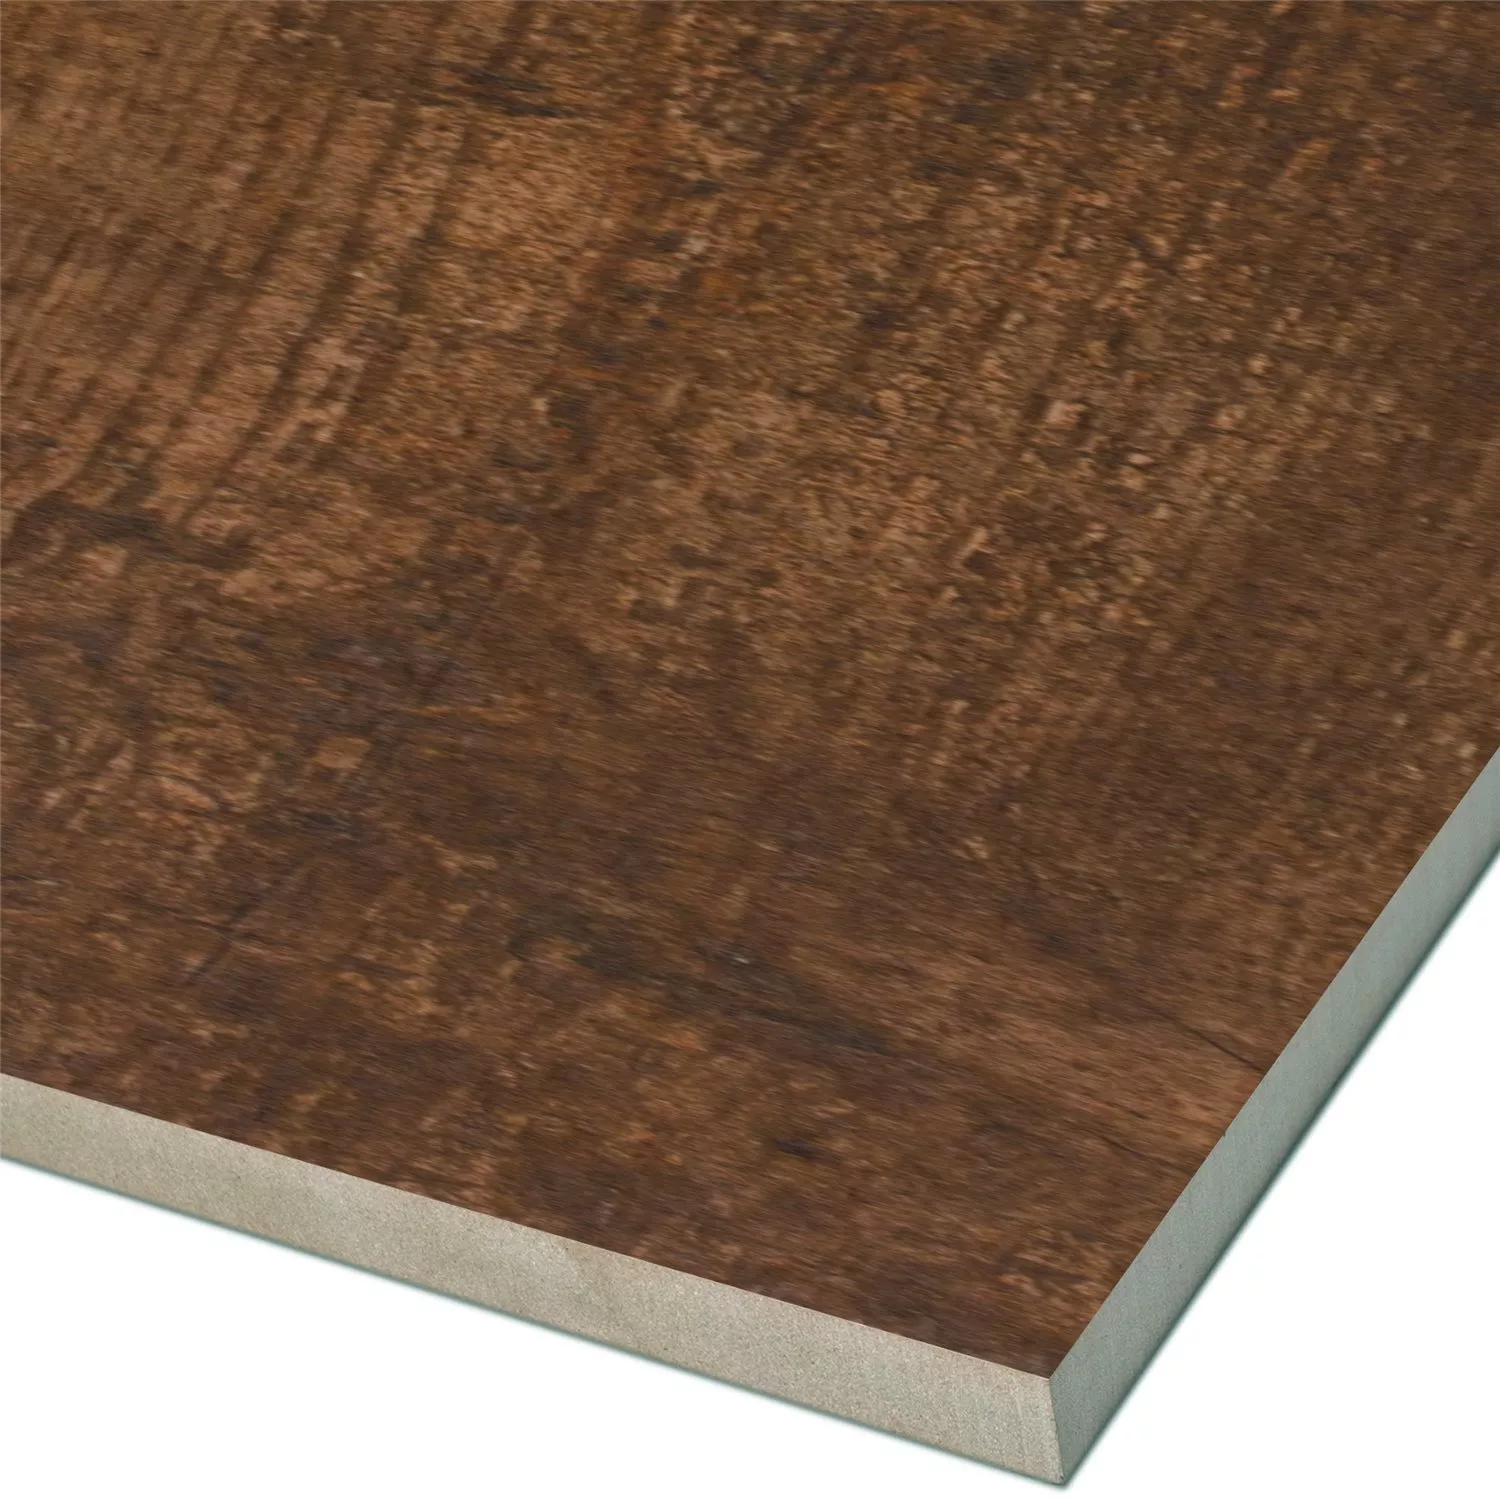 Wood Optic Floor Tiles Eiffel Pepita 10x60cm